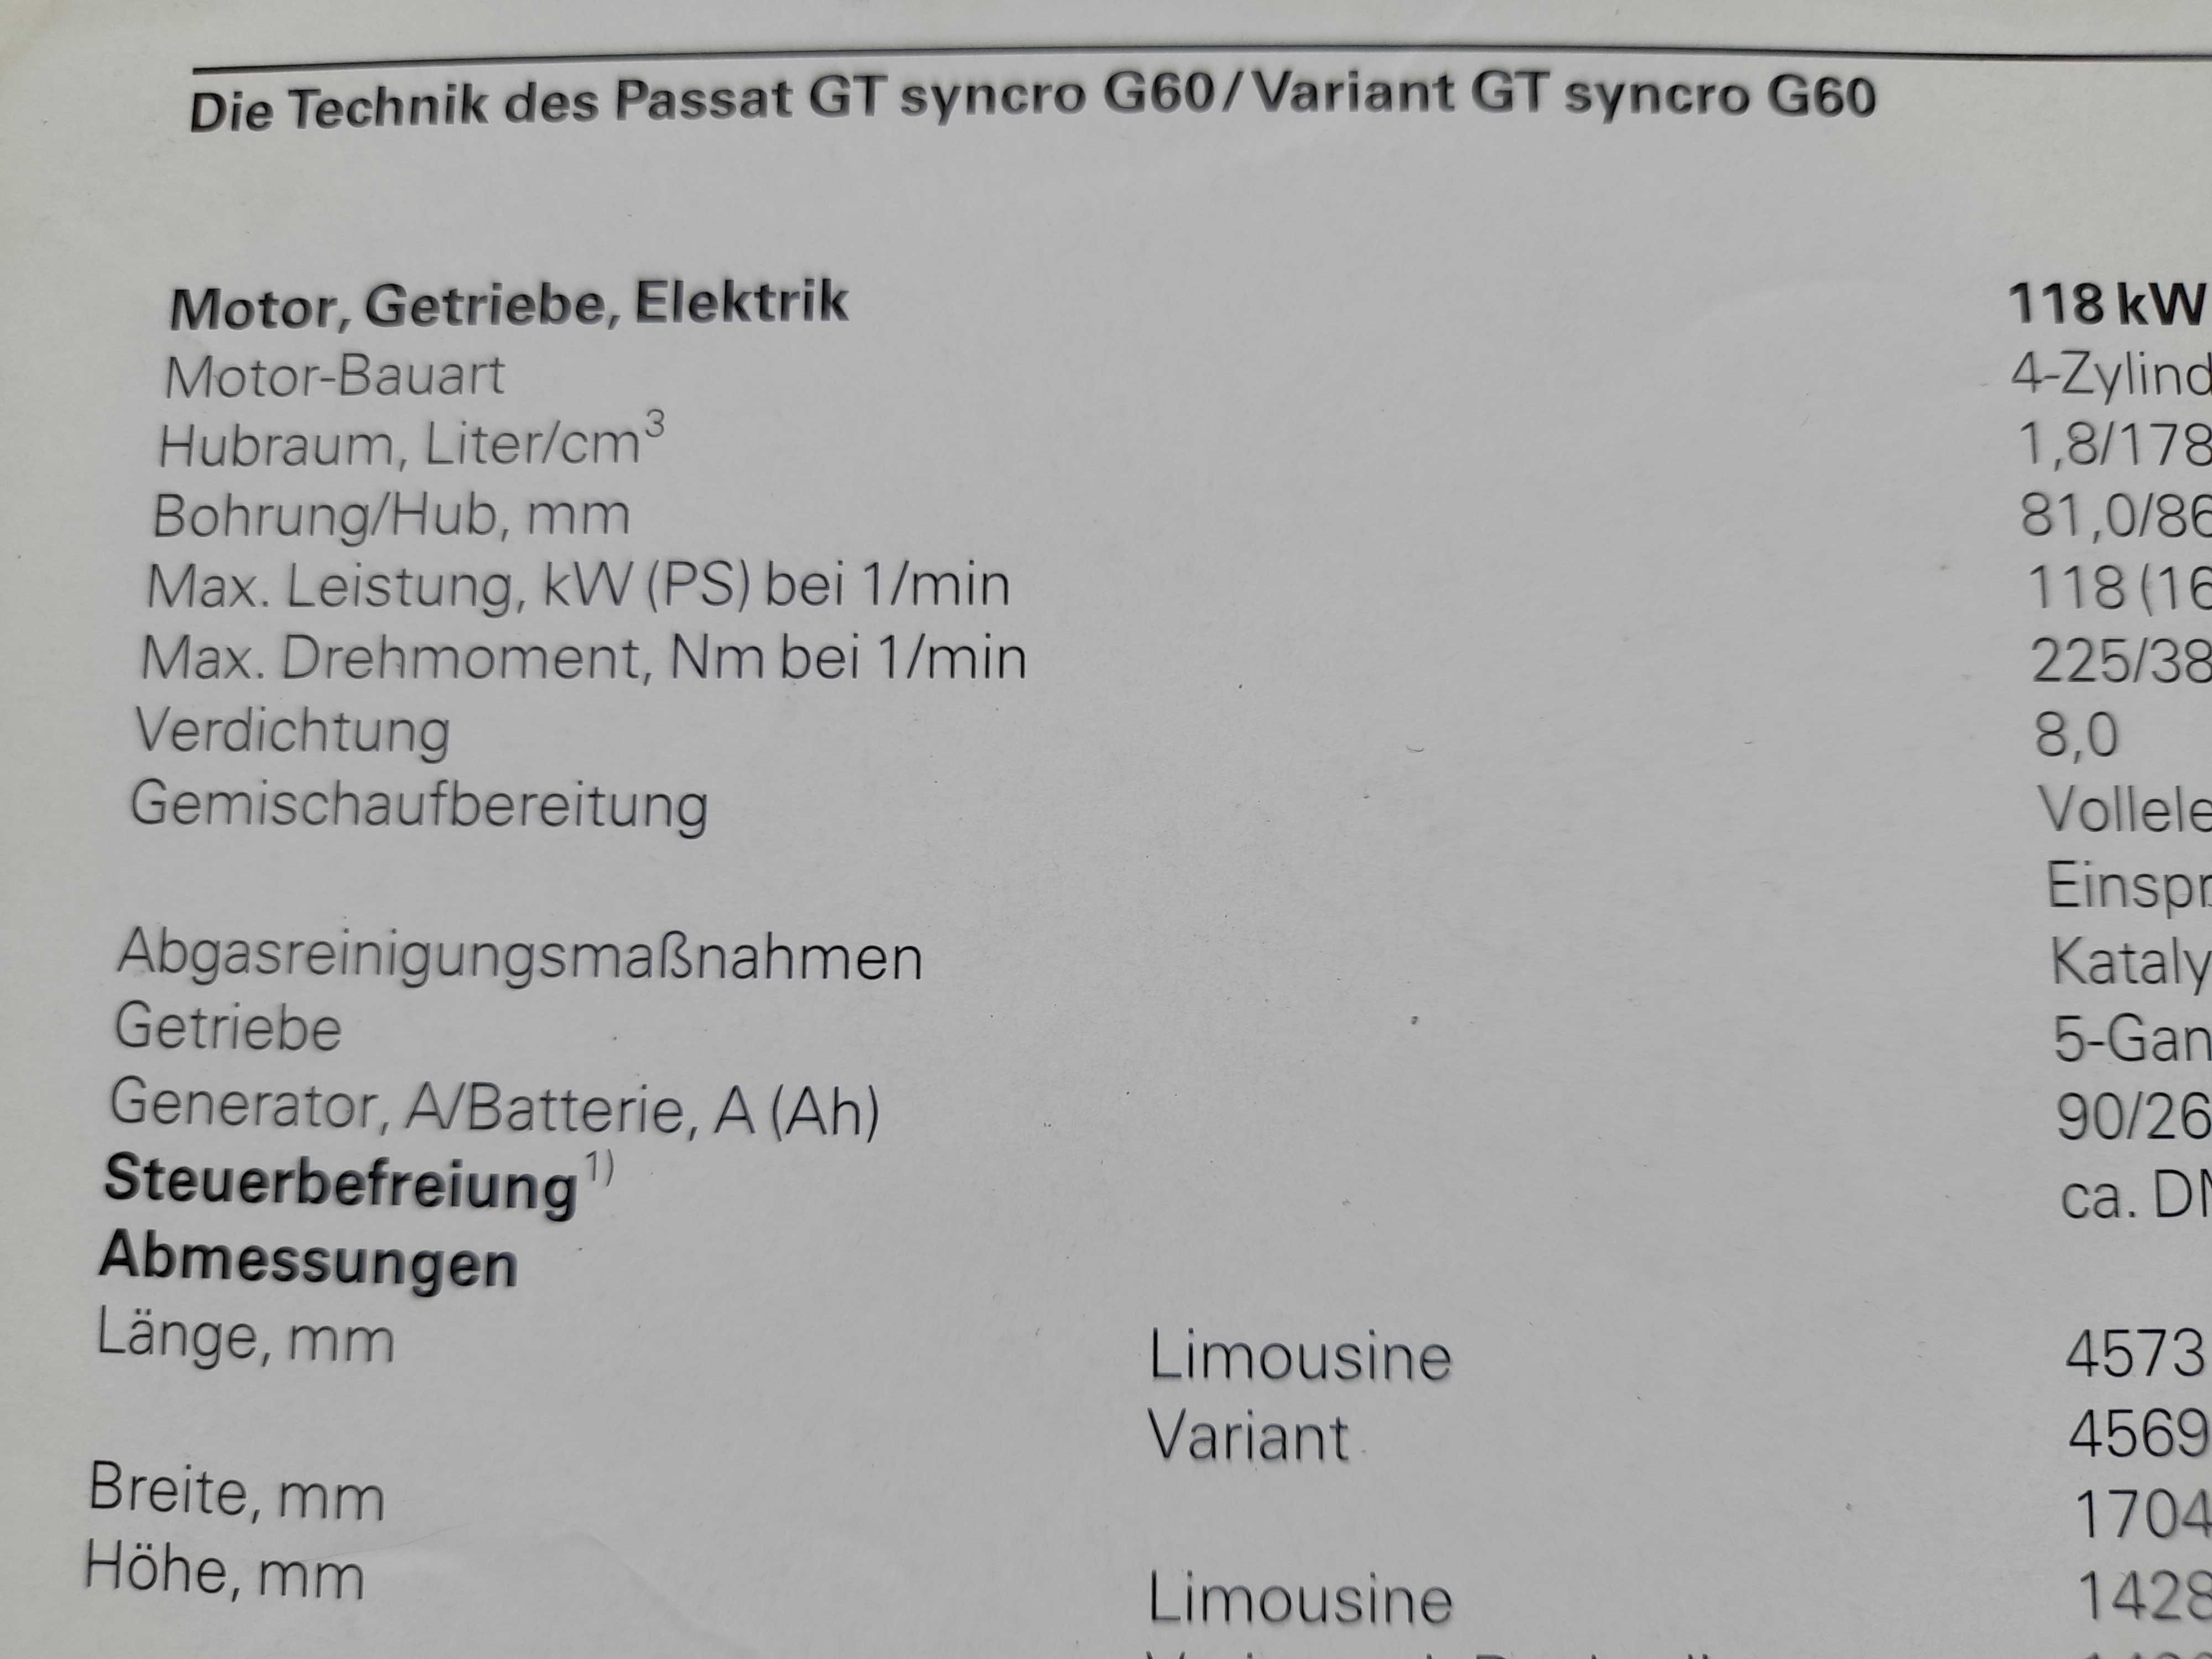 VOLKSWAGEN Passat GT syncro G60 prospekt niemiecki rok 1989